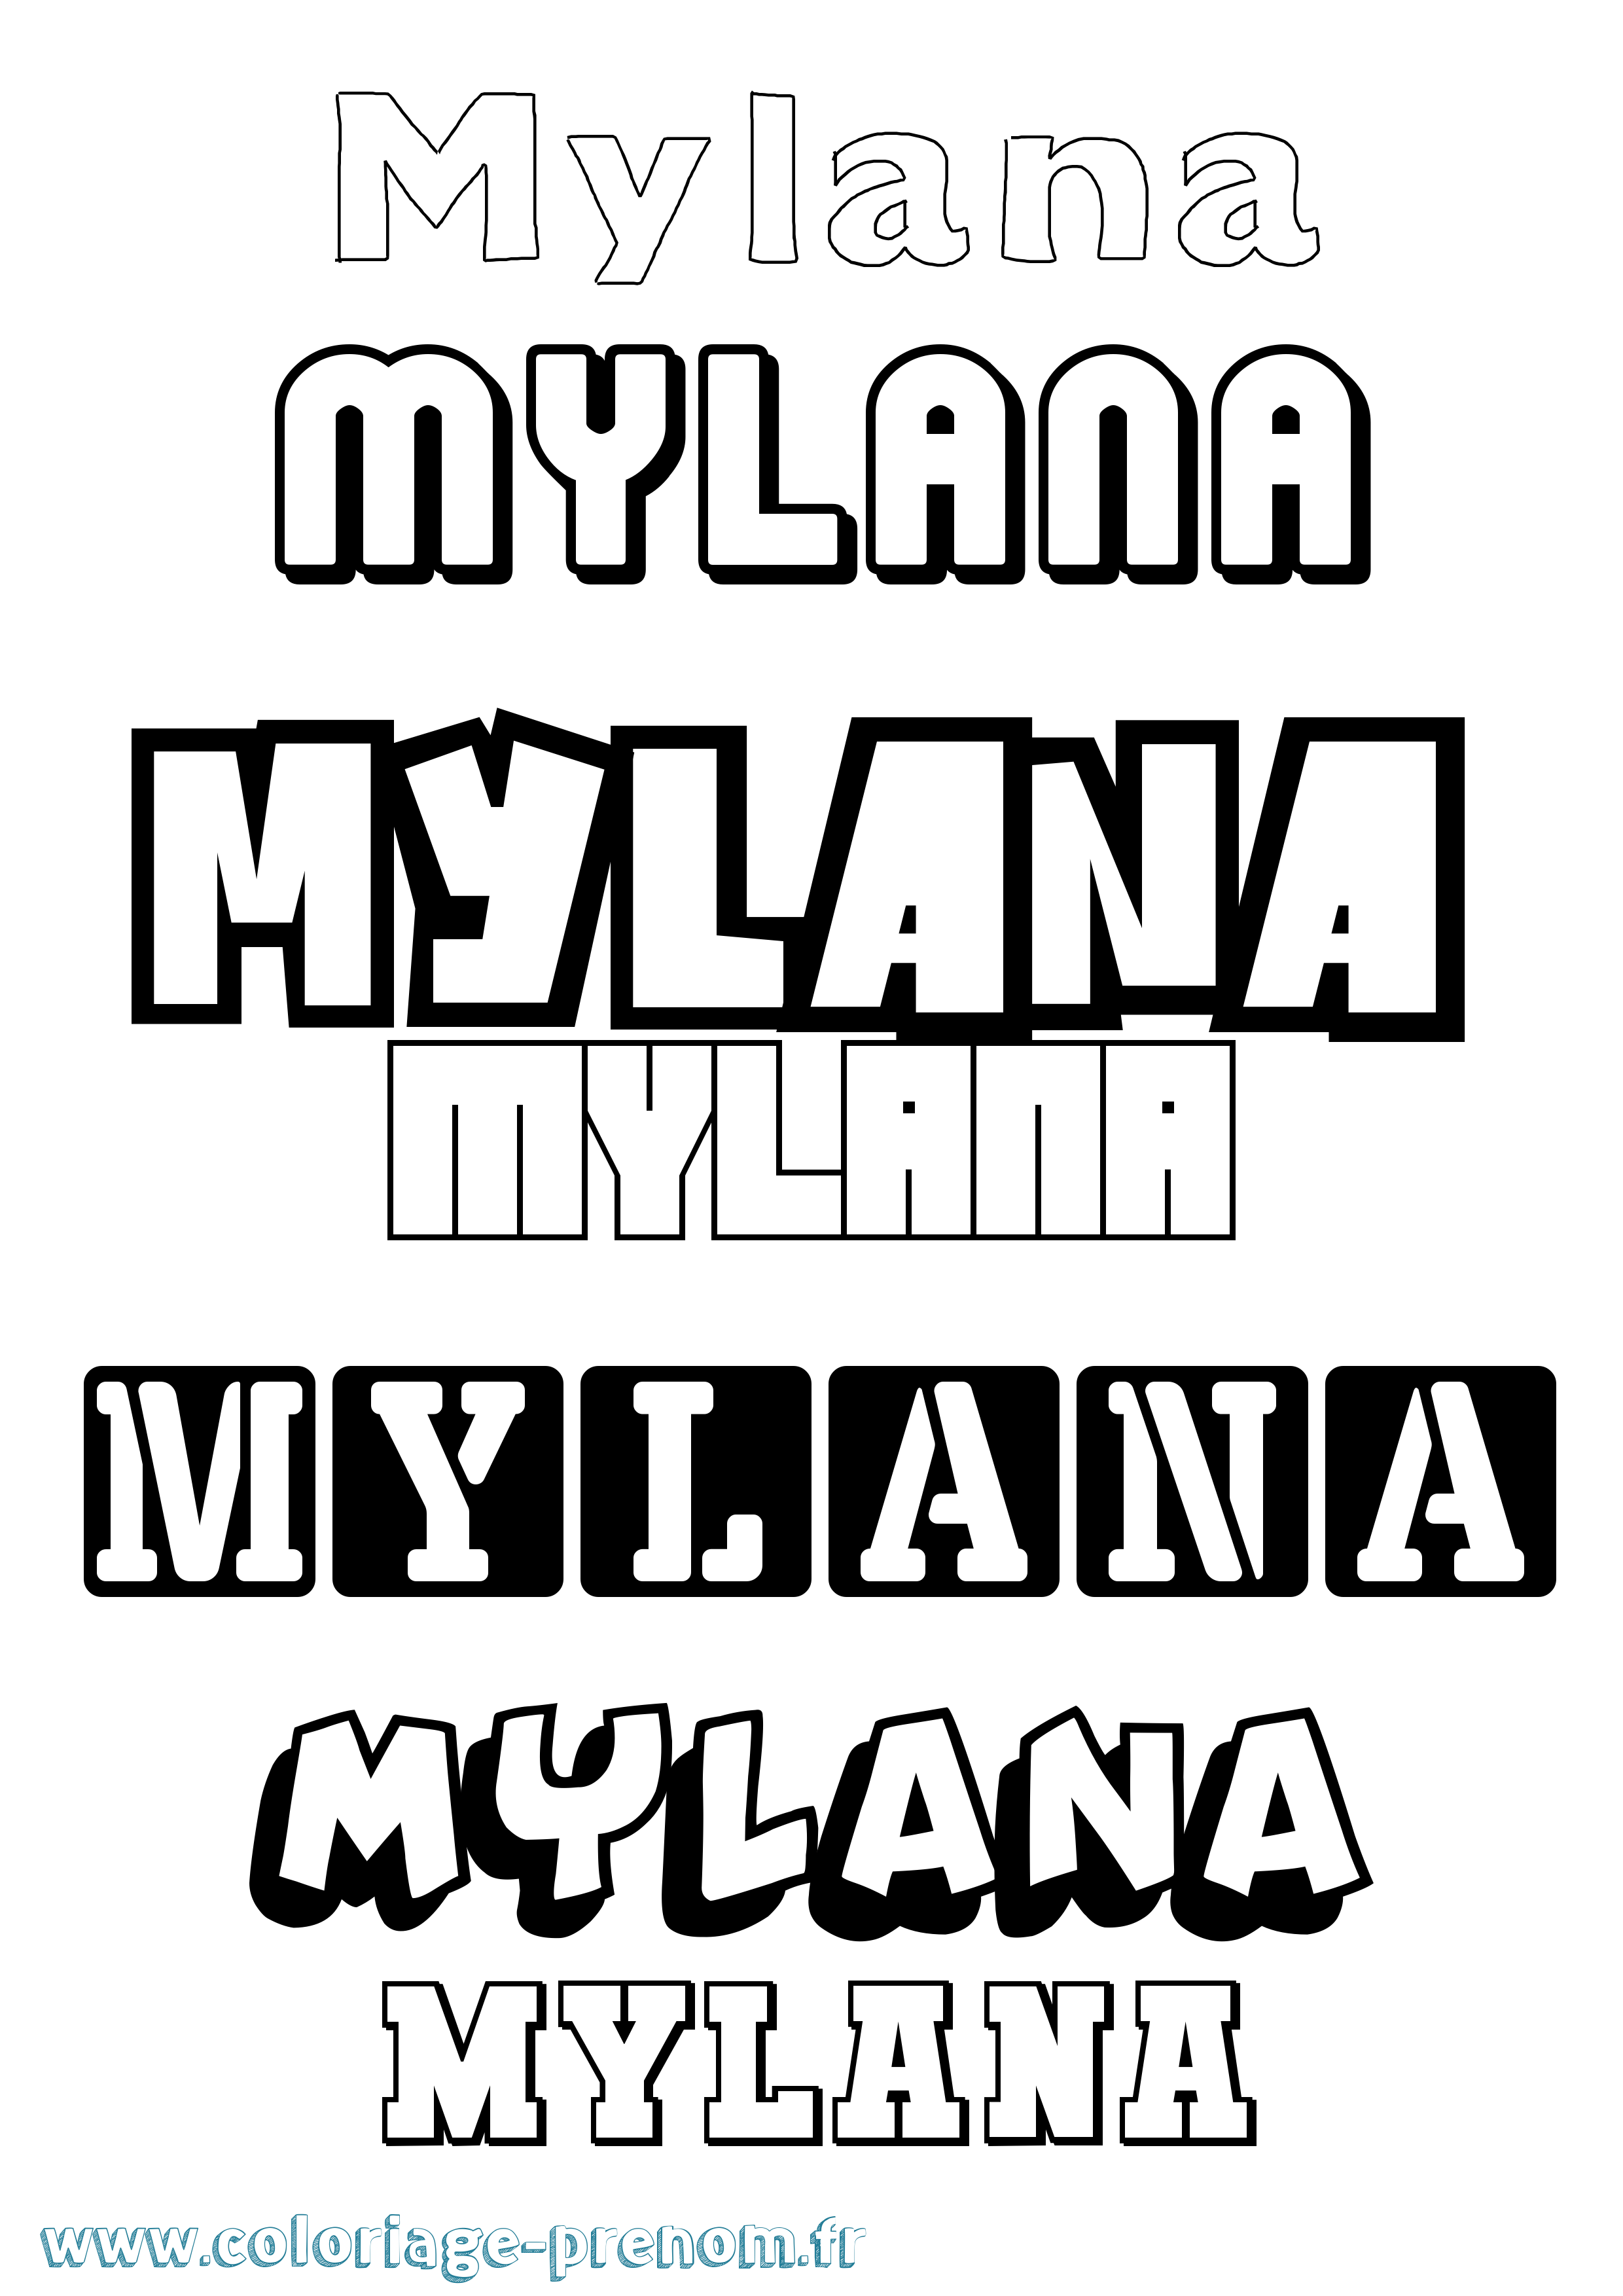 Coloriage prénom Mylana Simple